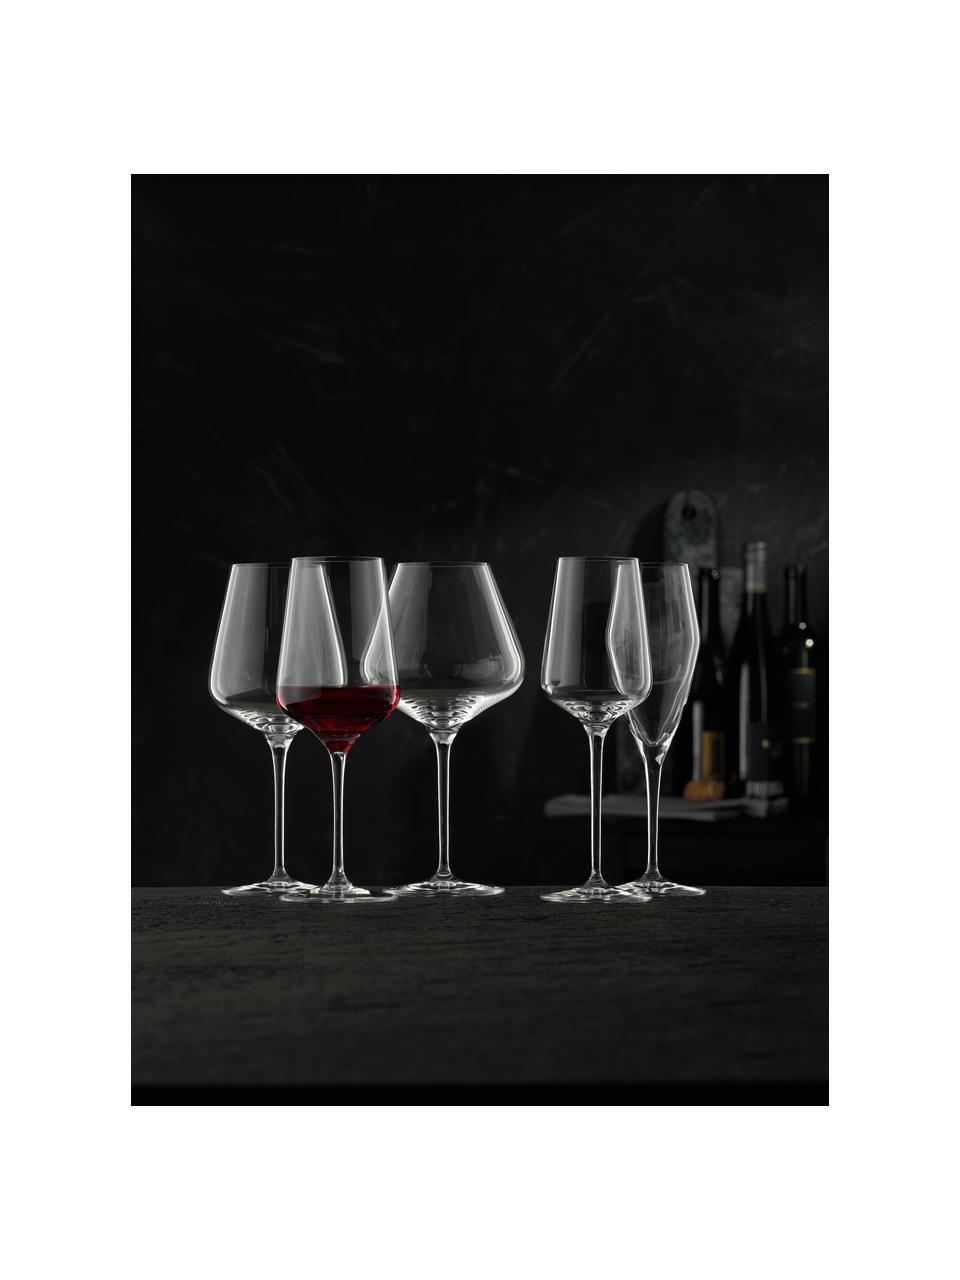 Kristall-Rotweingläser ViNova, 4 Stück, Kristallglas, Transparent, Ø 11 x H 24 cm, 680 ml